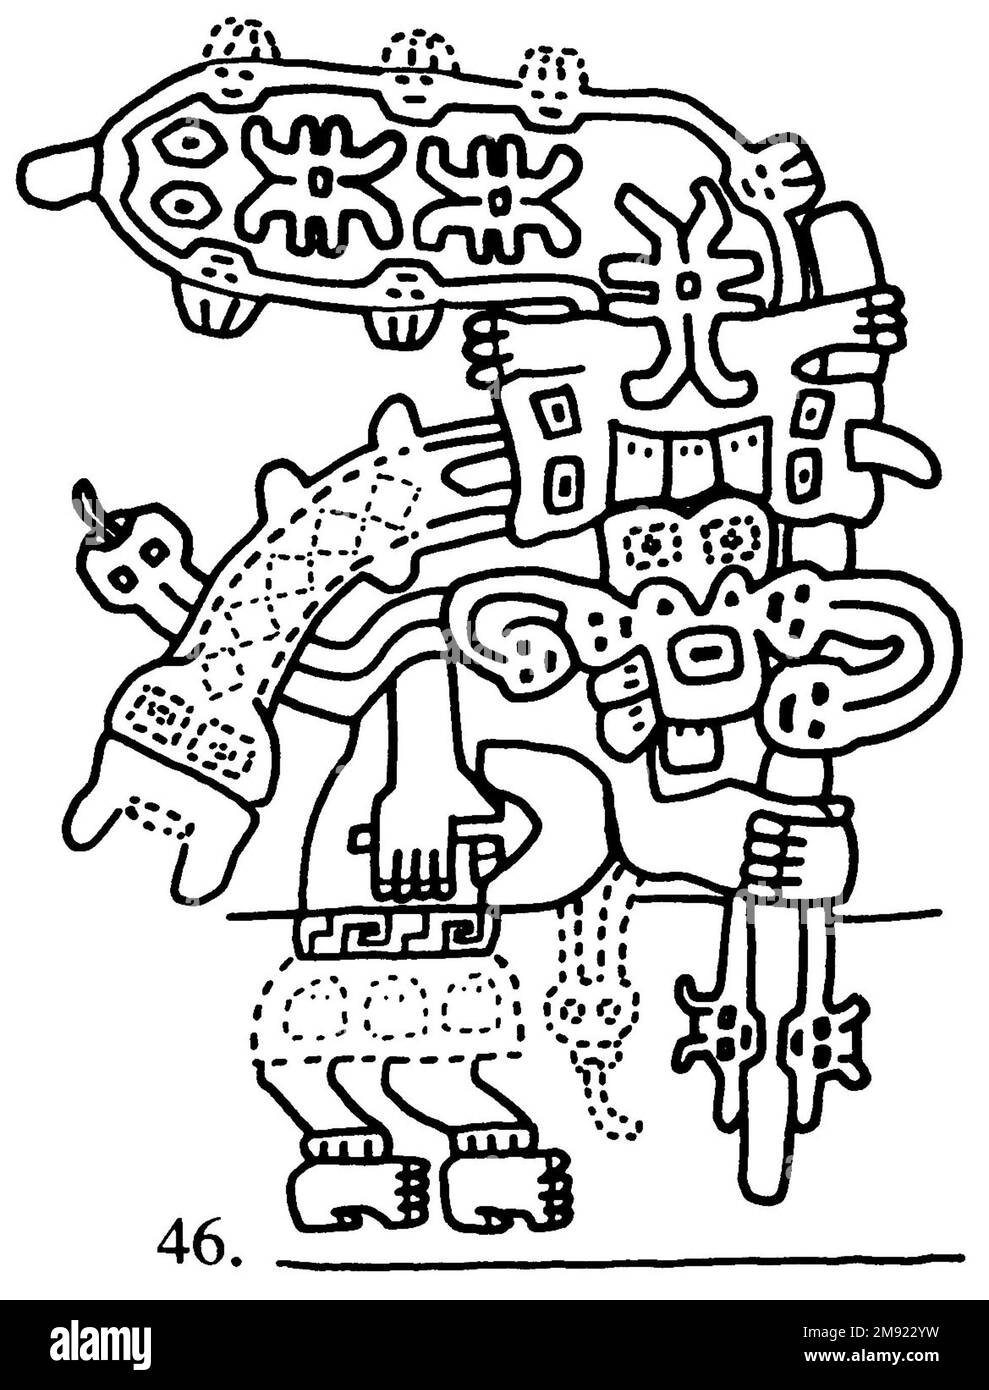 Manteau ('le textile Paracas') Nasca. Mantle ('The Paracas textile'), 100-300 C.E. Coton, fibre camélide, 24 5/8 × 58 11/16 po. (62,5 × 149 cm). Ce manteau extraordinairement complexe, ou manteau, est l'un des textiles andins les plus renommés au monde. Il a probablement été utilisé comme objet de cérémonie. Les quatre-vingt-dix personnages qui décorent la frontière, créés par le tricotage à l’aiguille, ont été interprétés comme un microcosme de vie sur la côte sud du Pérou il y a deux mille ans, avec un accent particulier sur l’agriculture. Bon nombre des images illustrent la flore et la faune indigènes ainsi que les plantes cultivées. Personnages costumés Banque D'Images